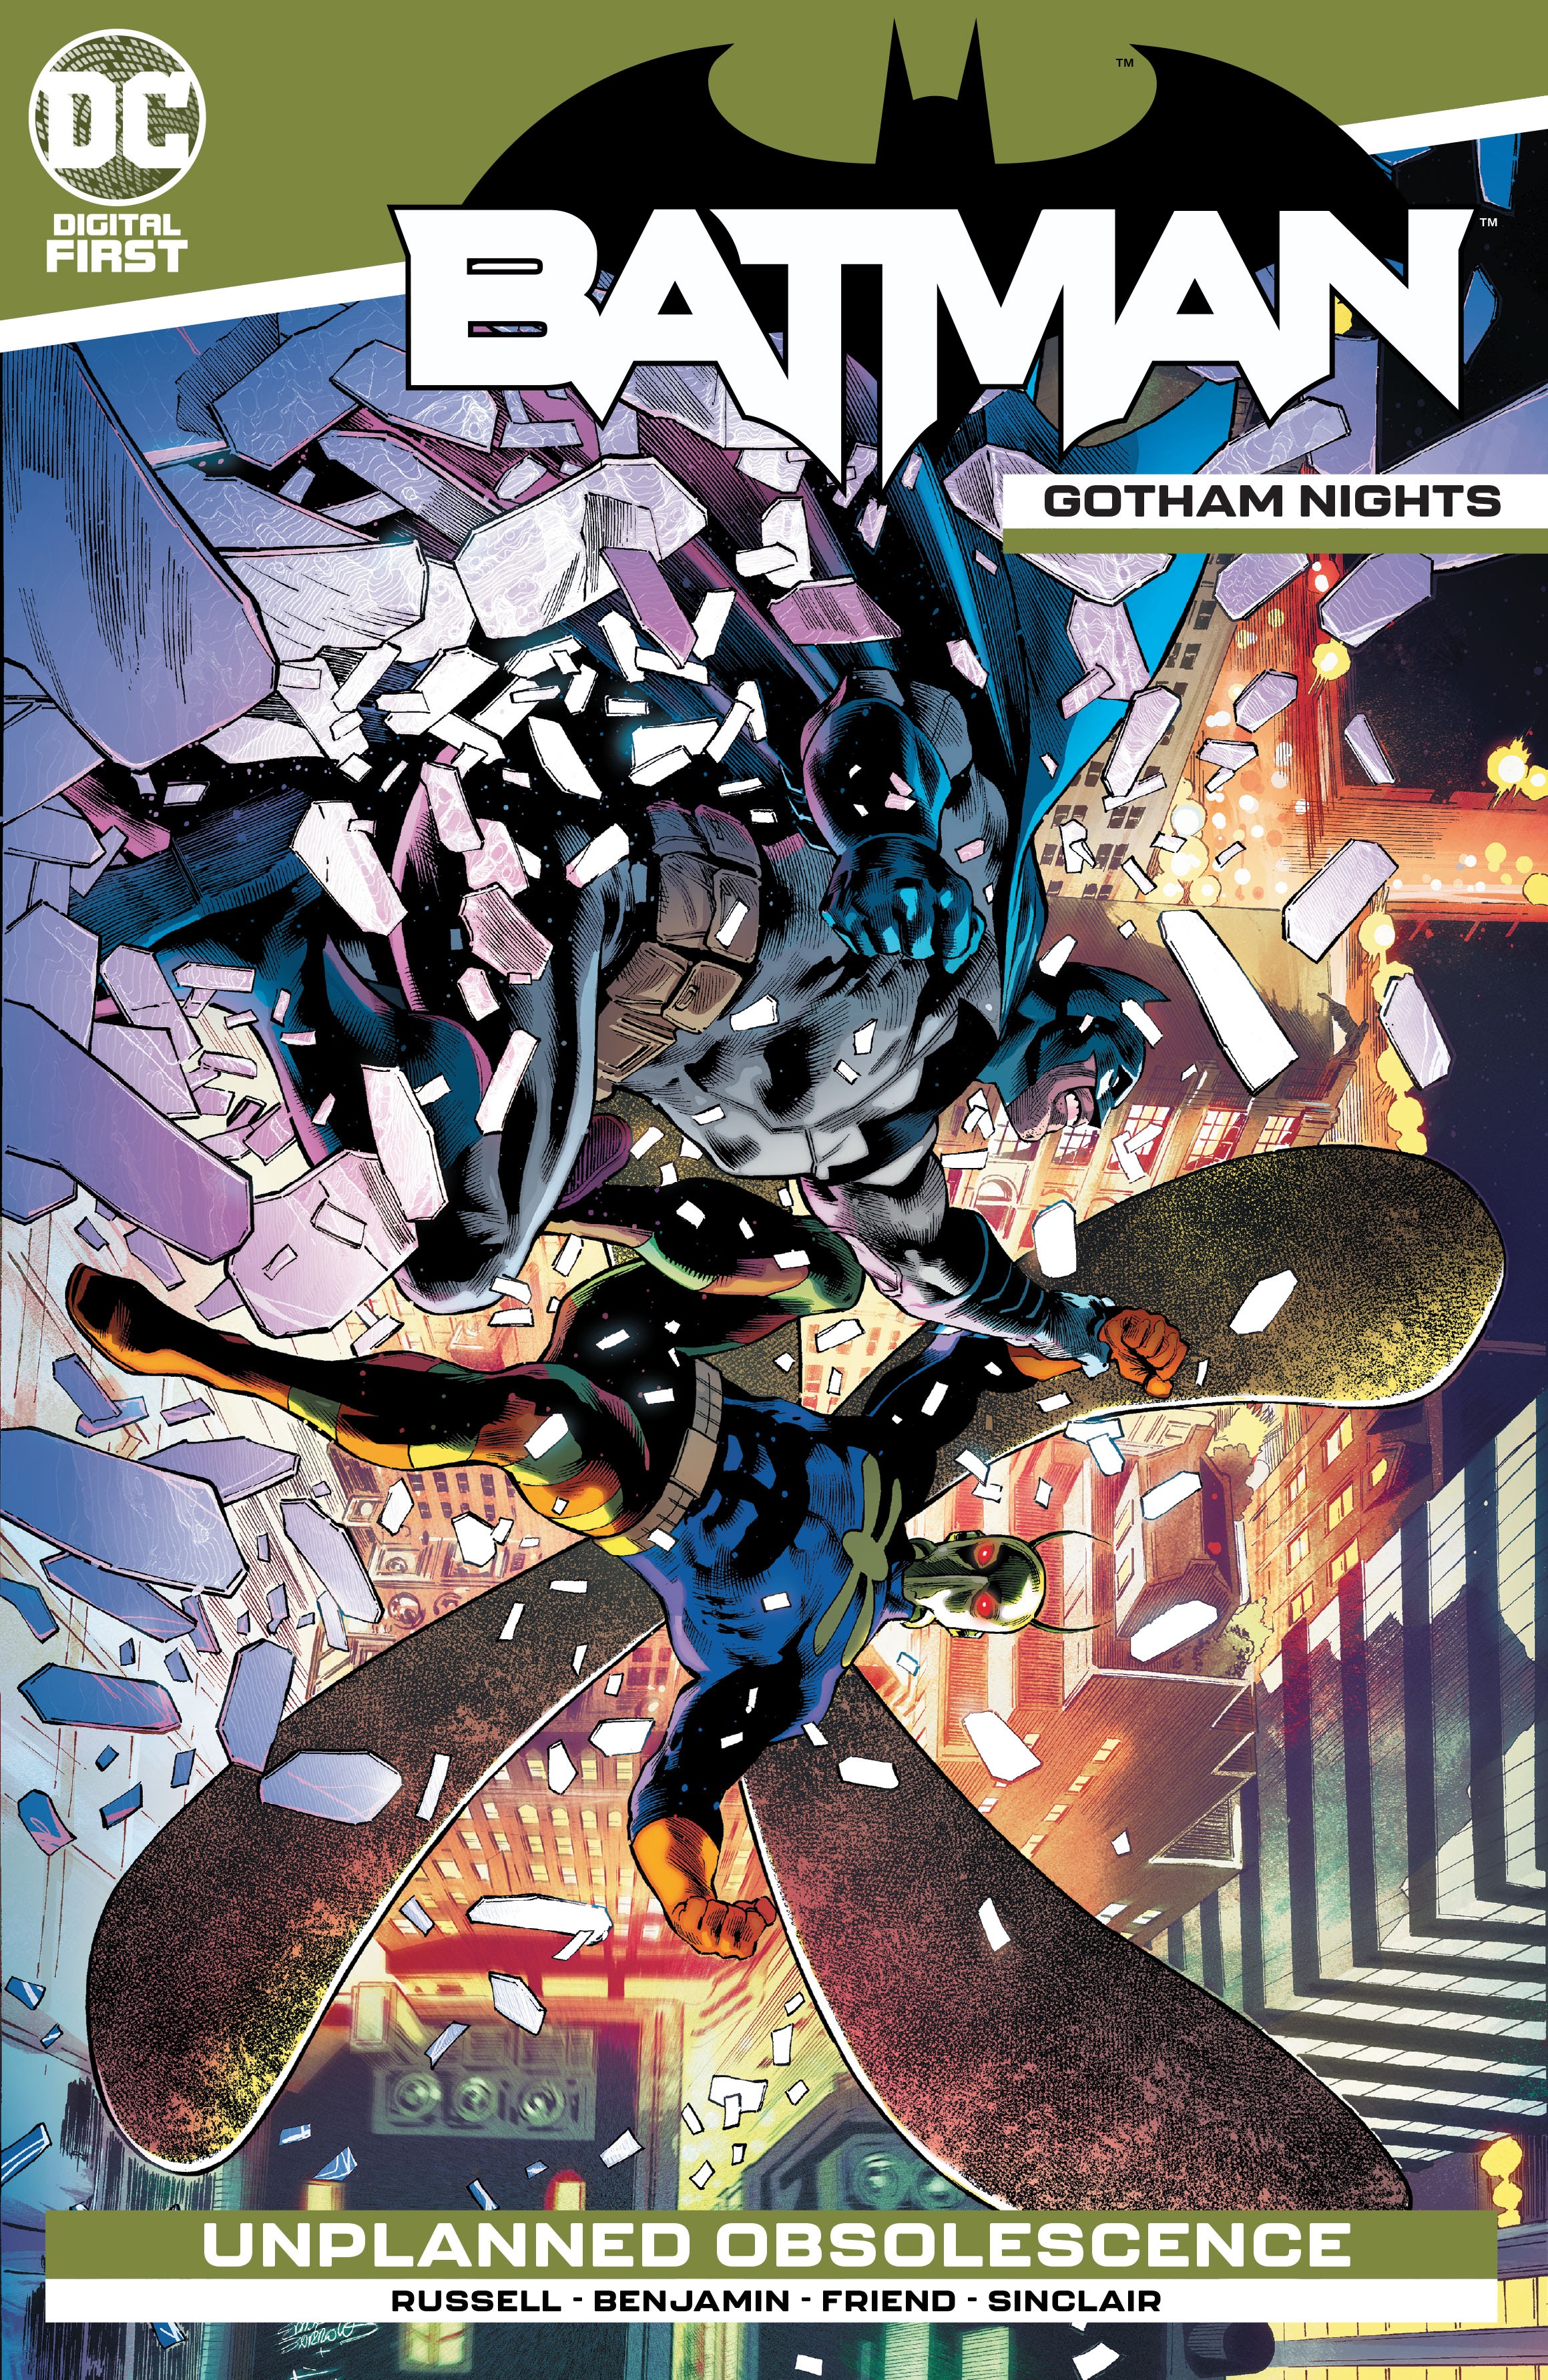 Batman: Gotham Nights Vol 1 7 (Digital) | DC Database | Fandom